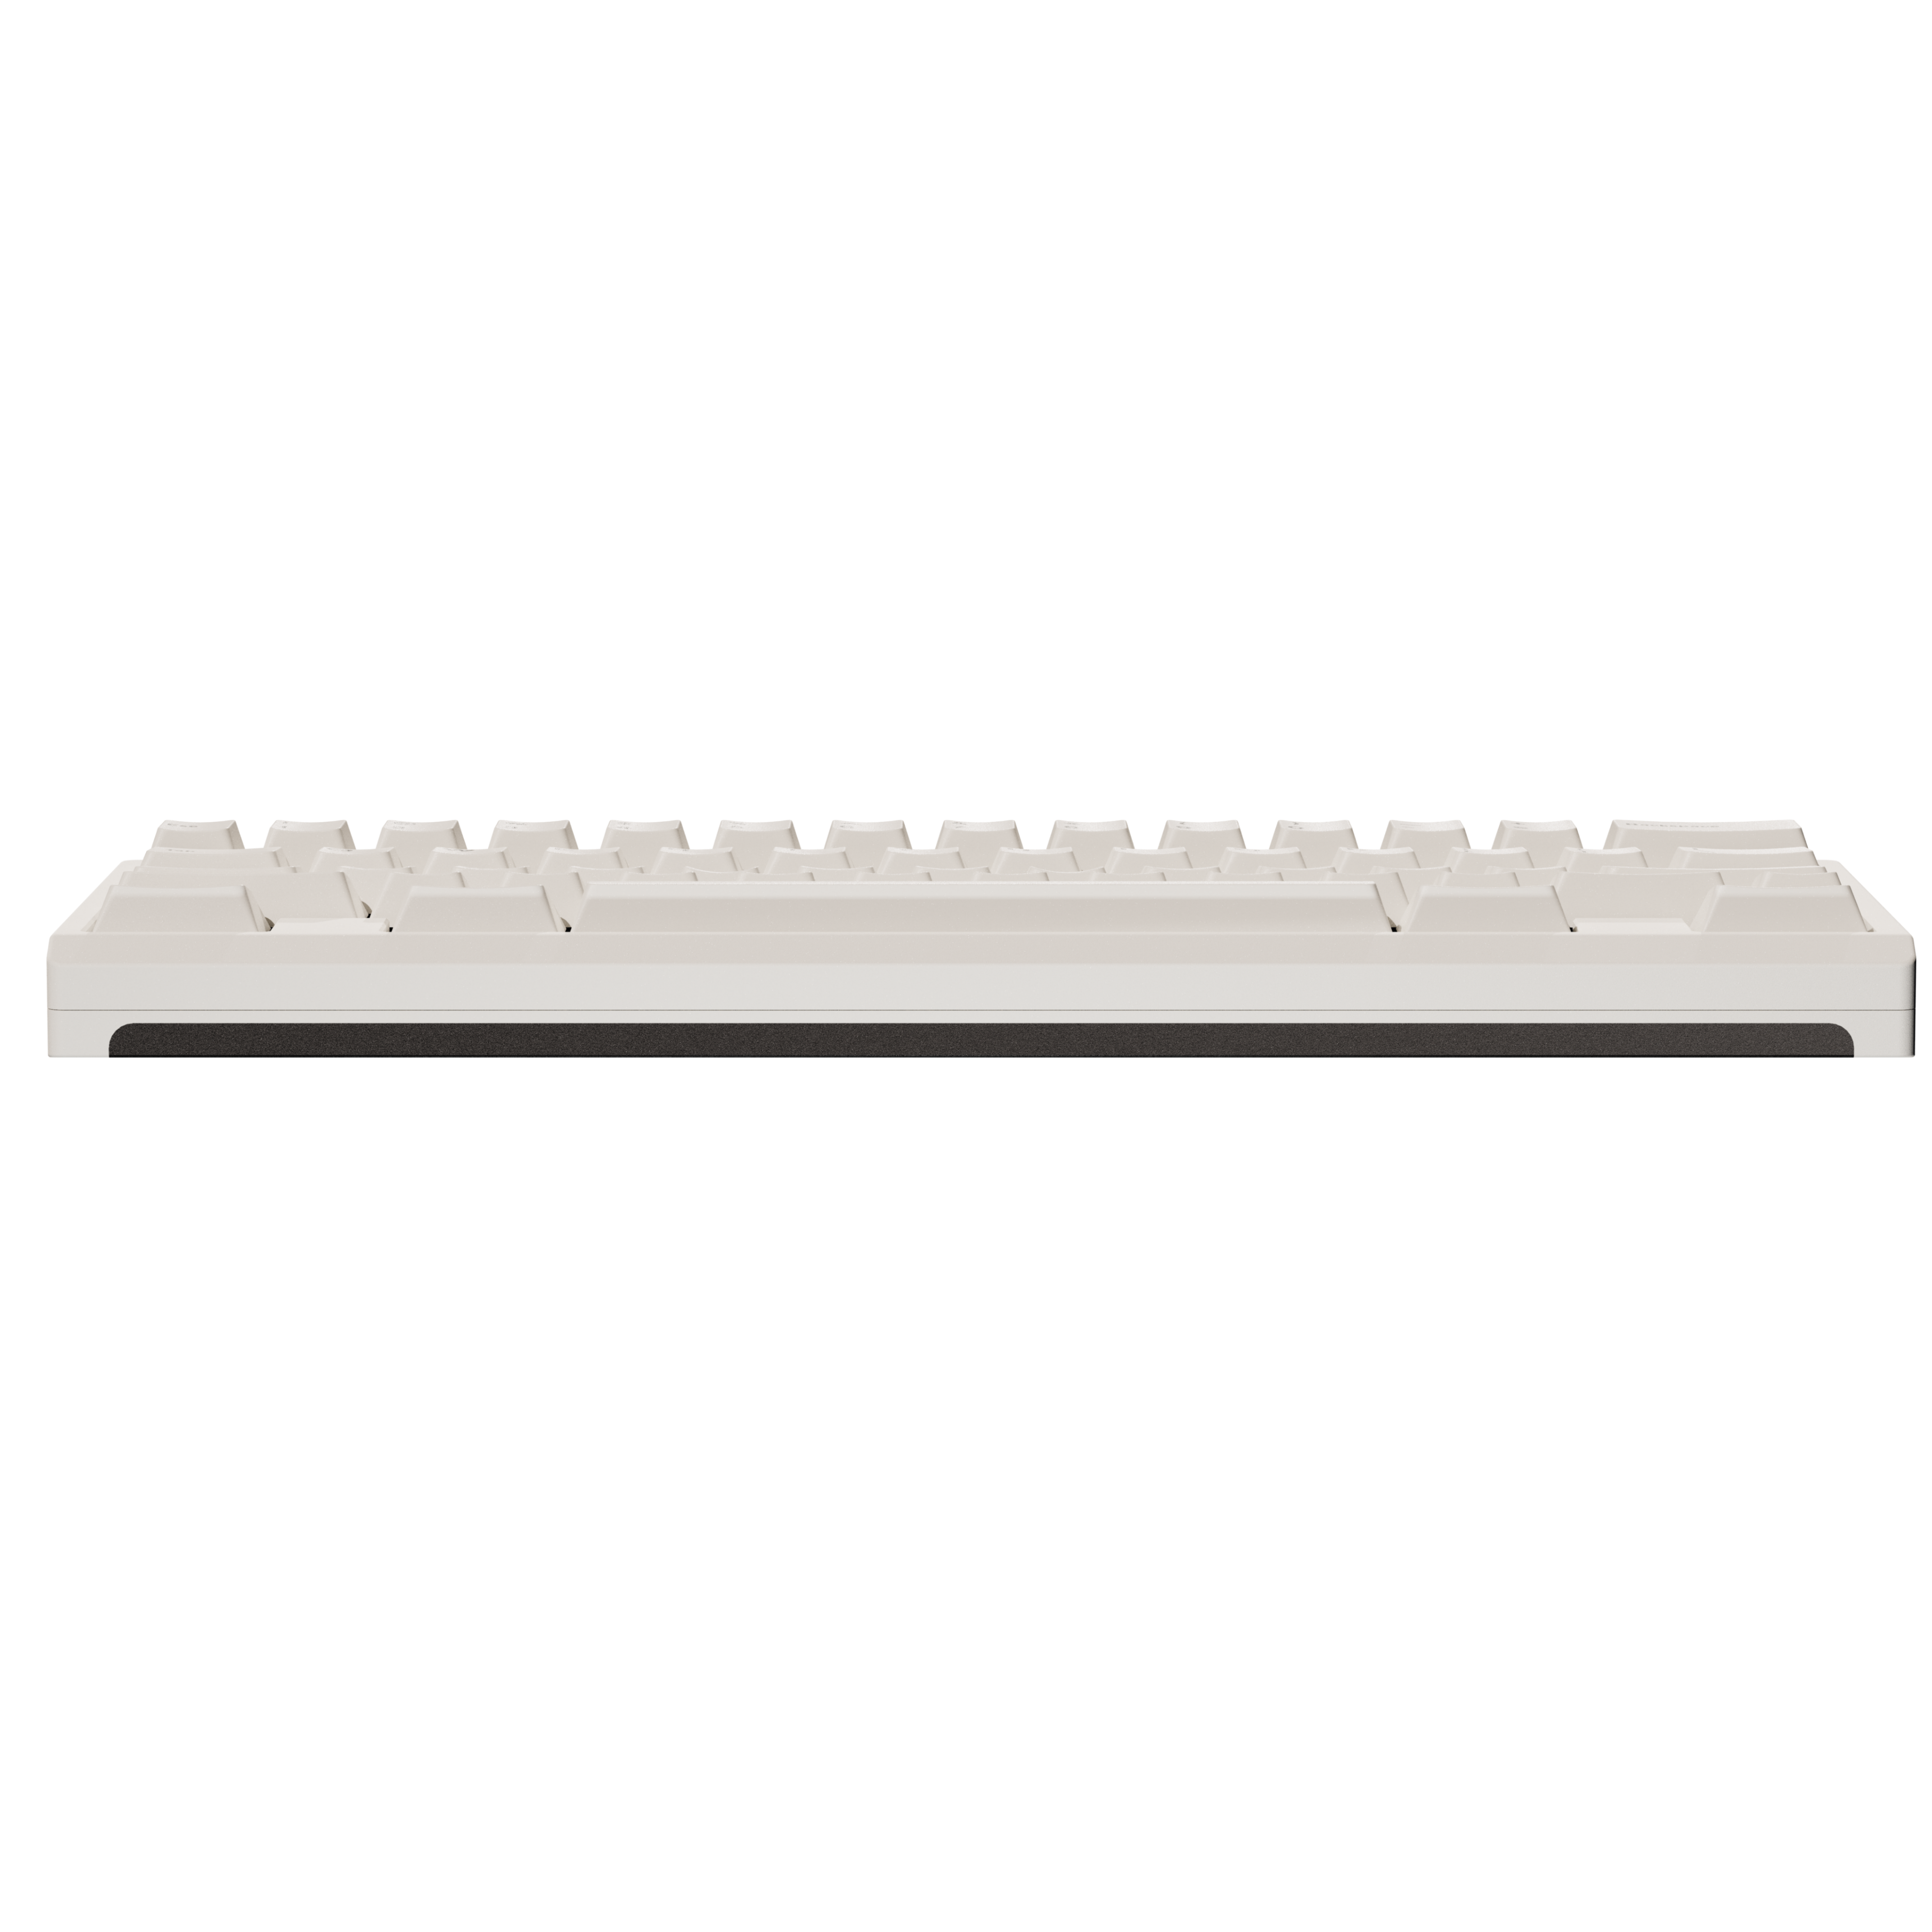 Tastierarossa Keyboard